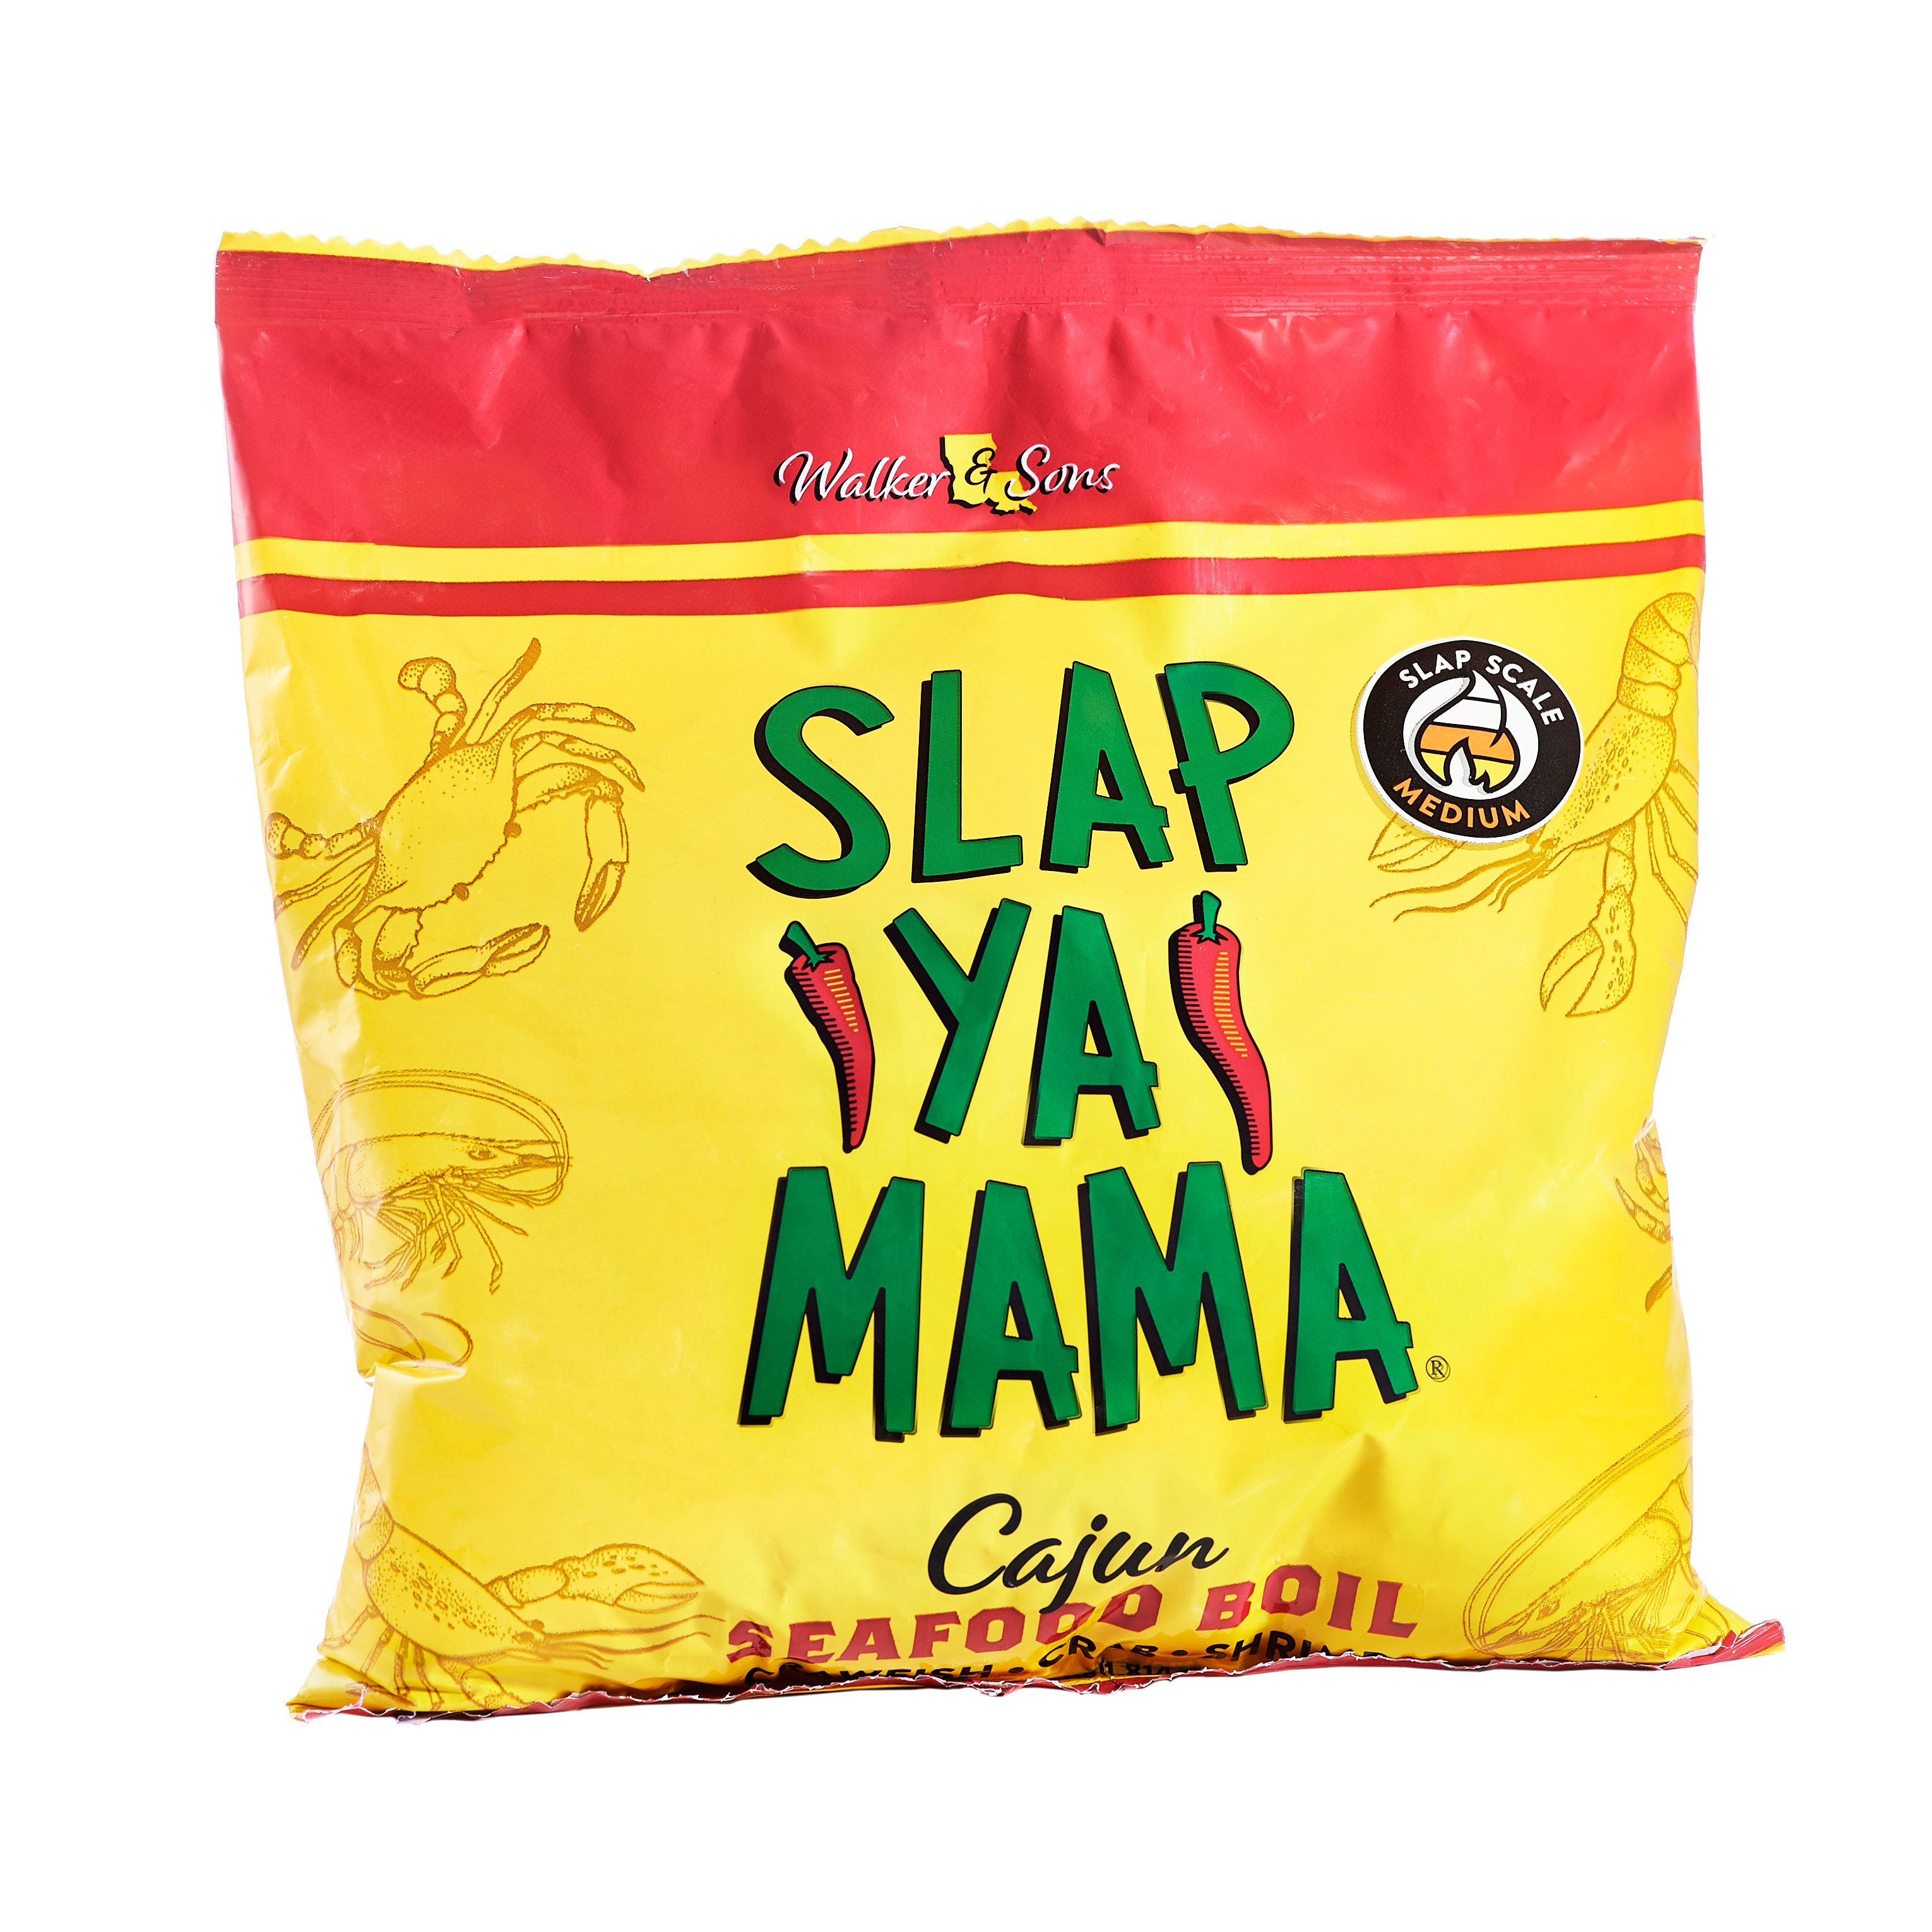 SLAP YA' MAMA Cajun Seasoning